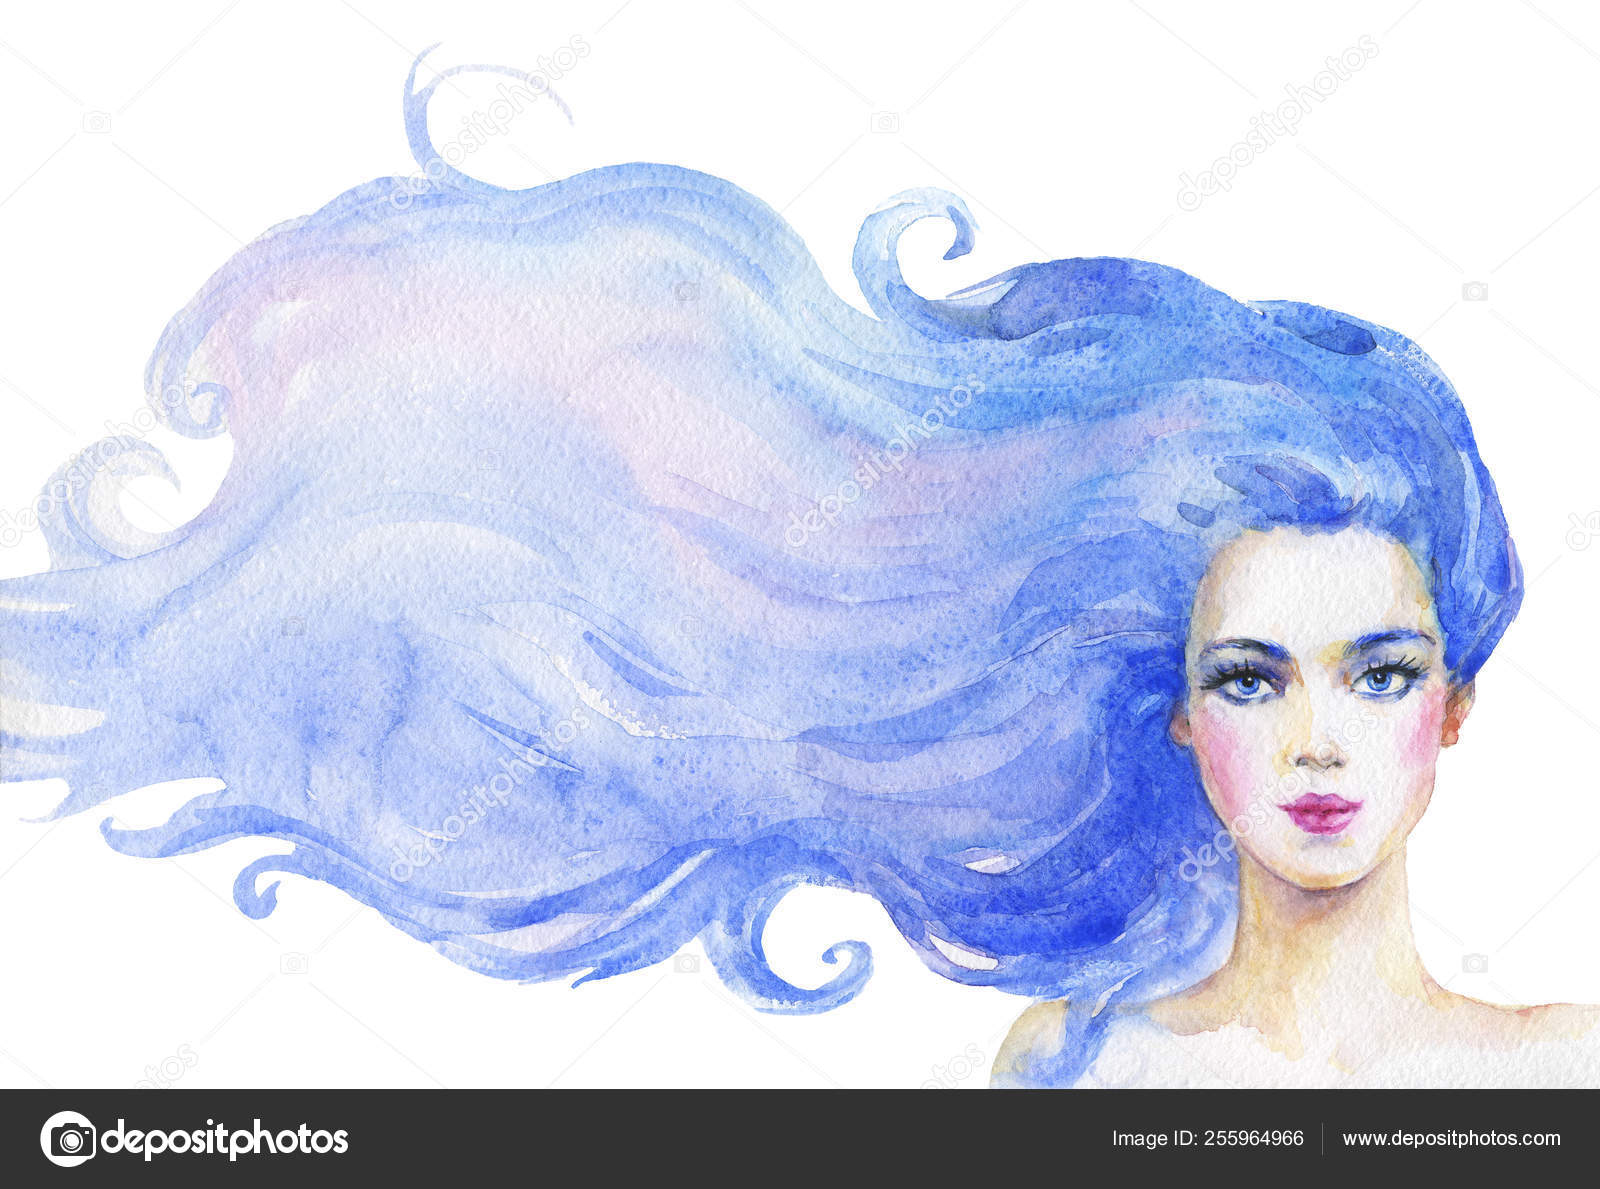 Uma ilustração em aquarela de uma garota com cabelo azul e uma